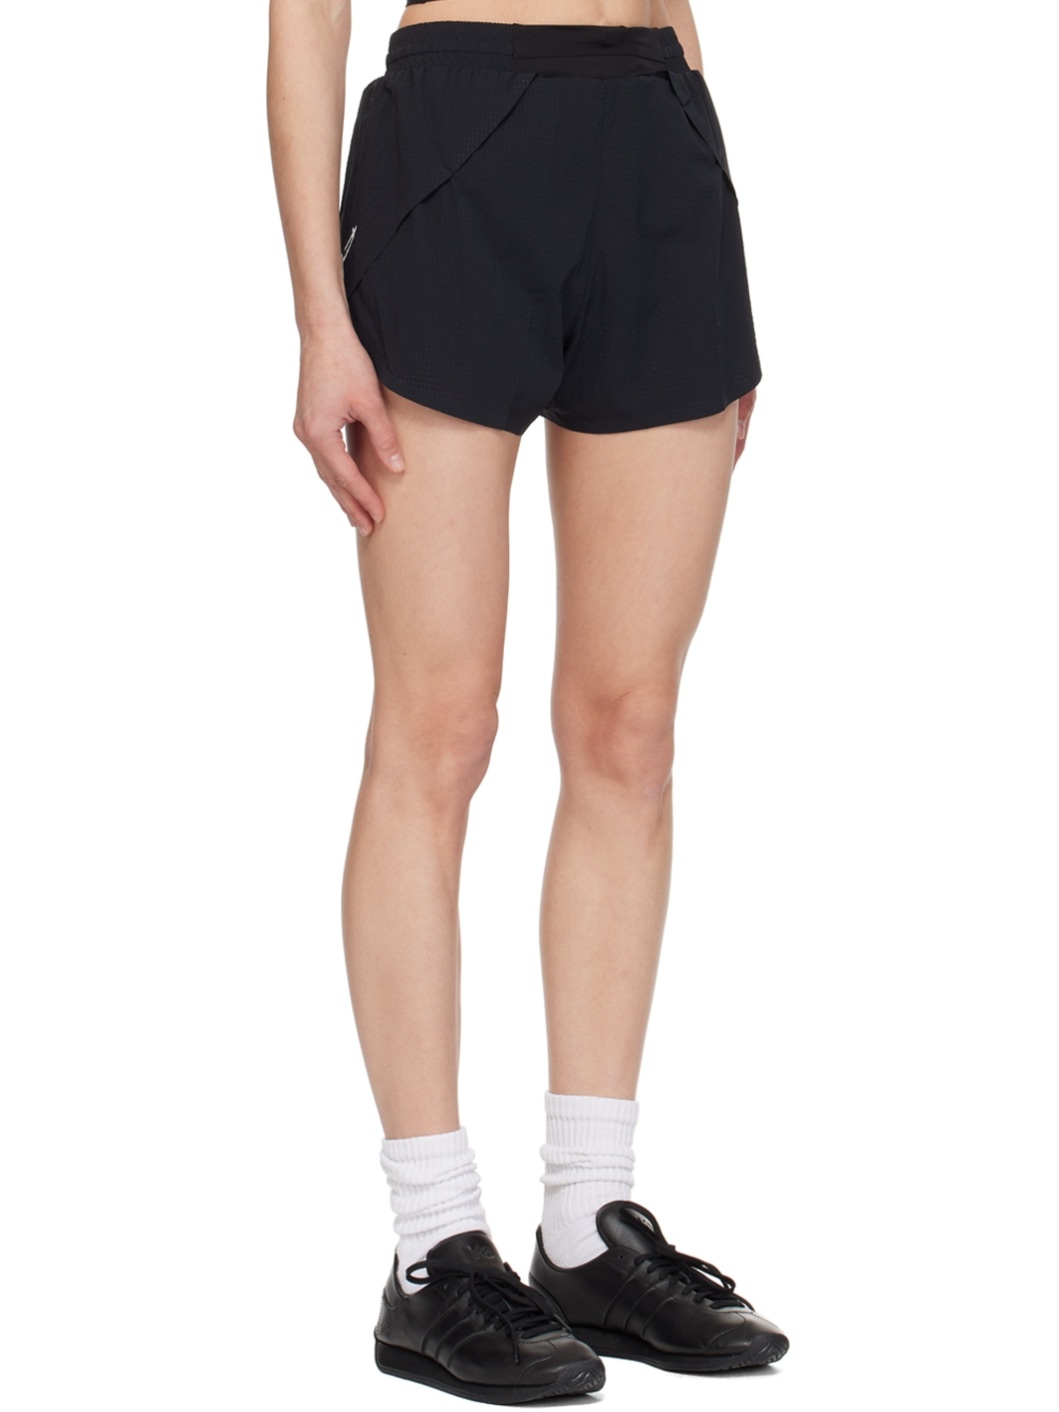 Black Running Shorts - 2